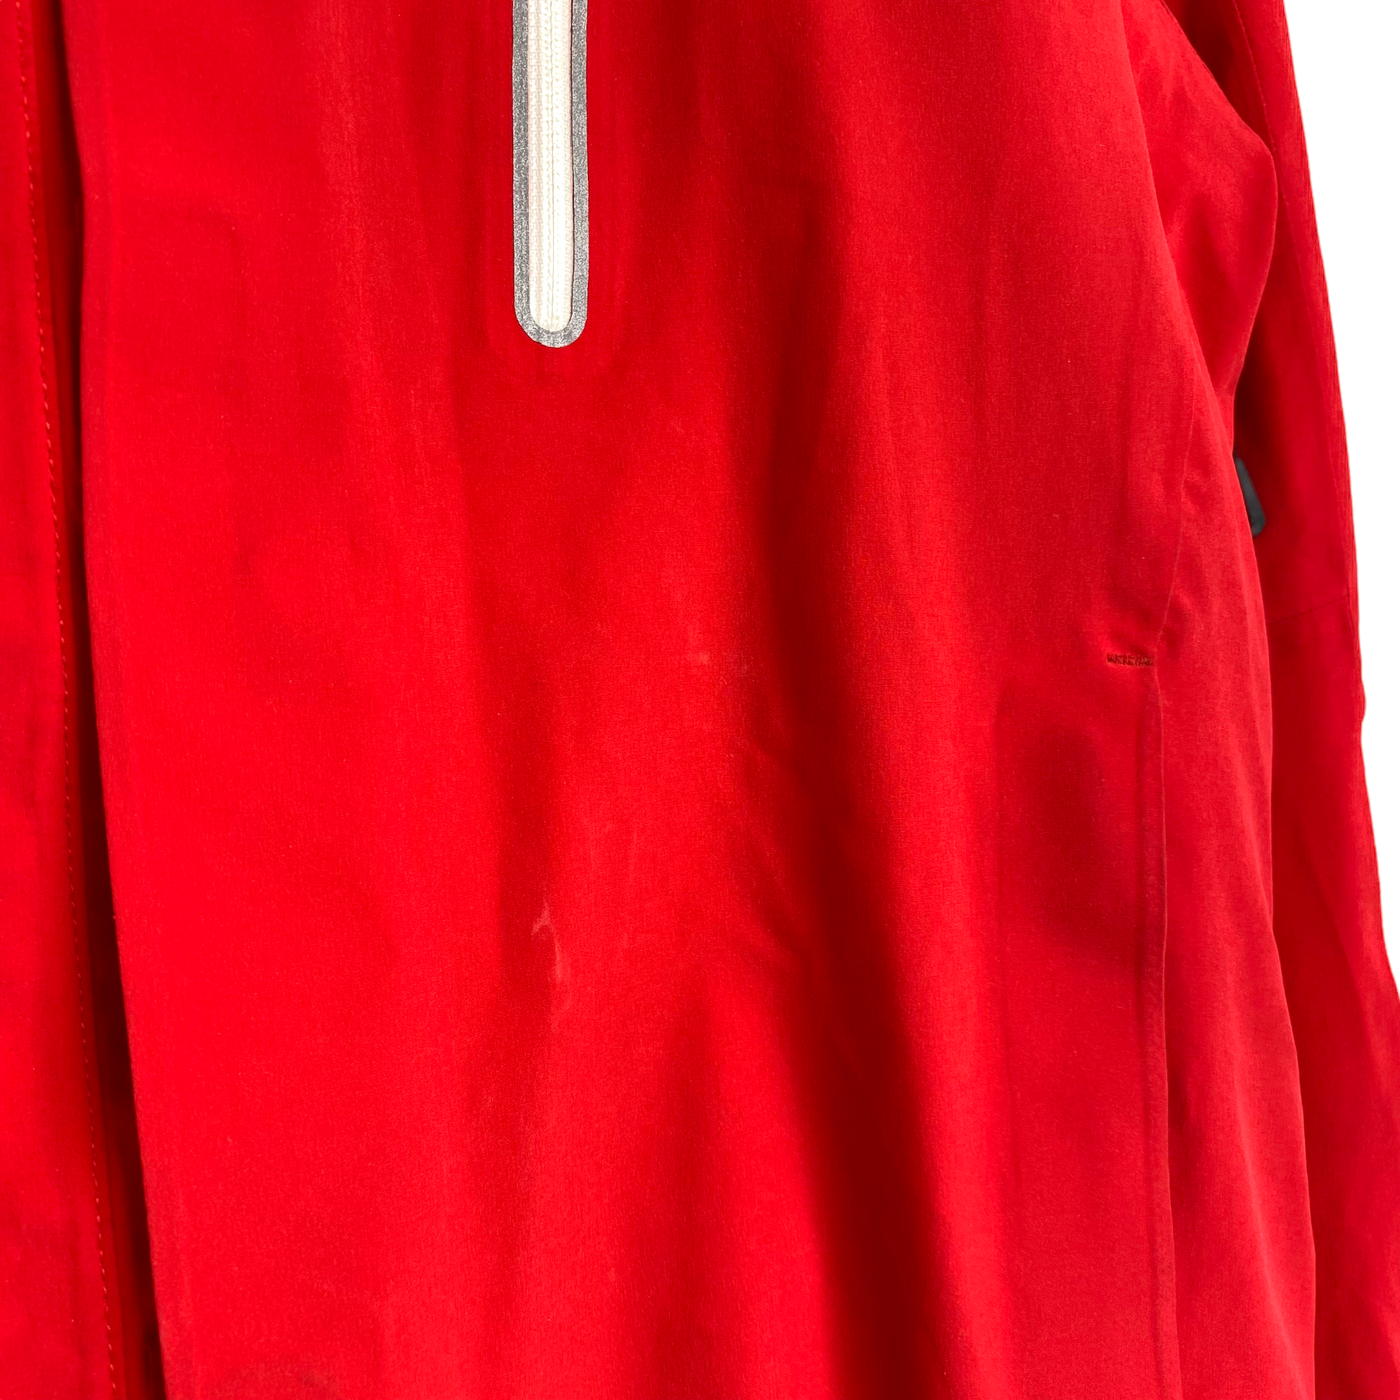 Halti DrymaxX ski jacket, red | man S